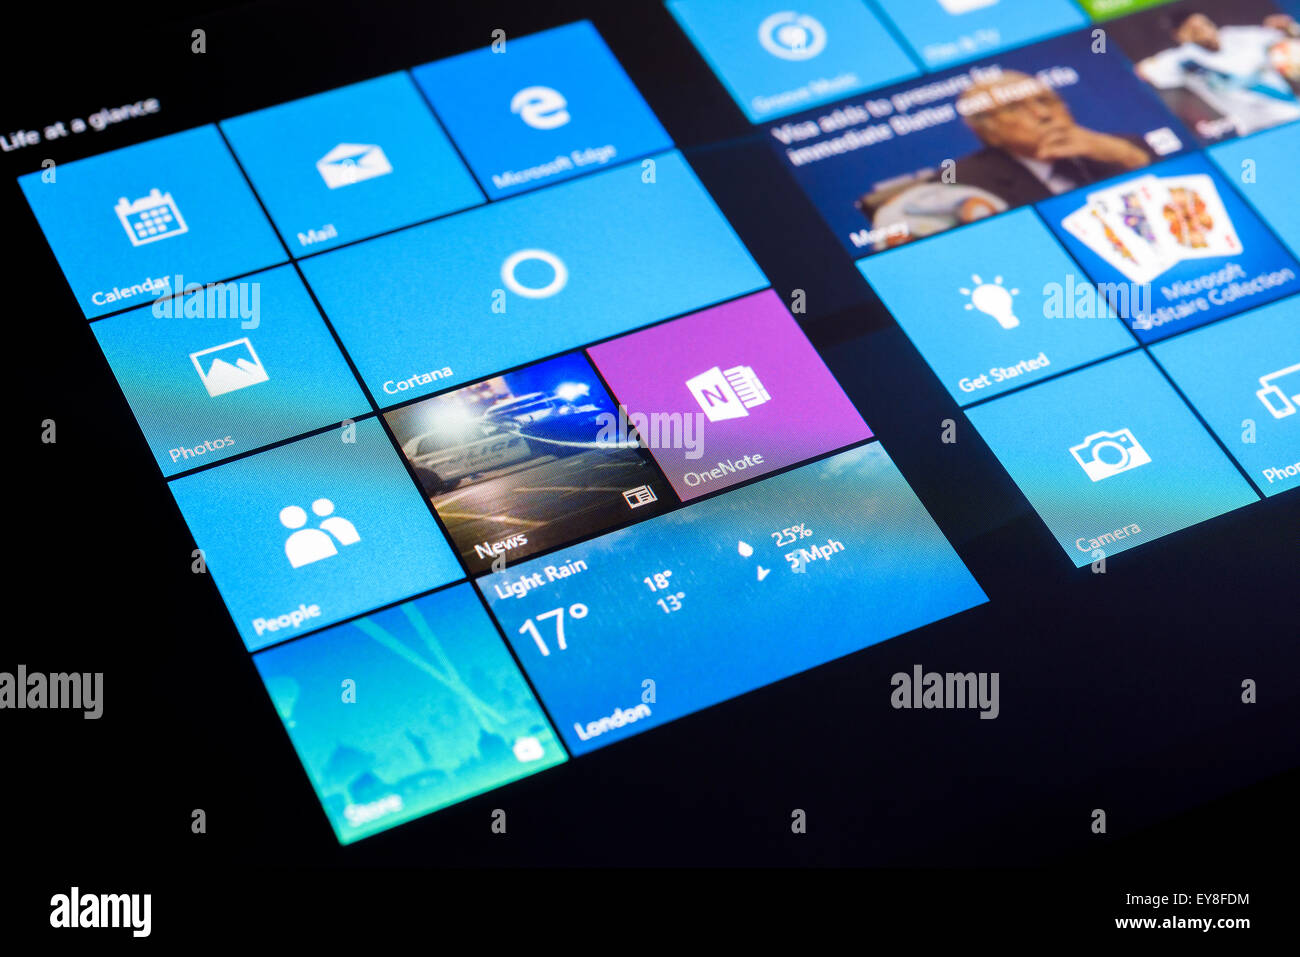 Le menu Démarrer de Microsoft Windows 10 Système d'exploitation sur un écran tactile Tablet en mode tablette. Banque D'Images